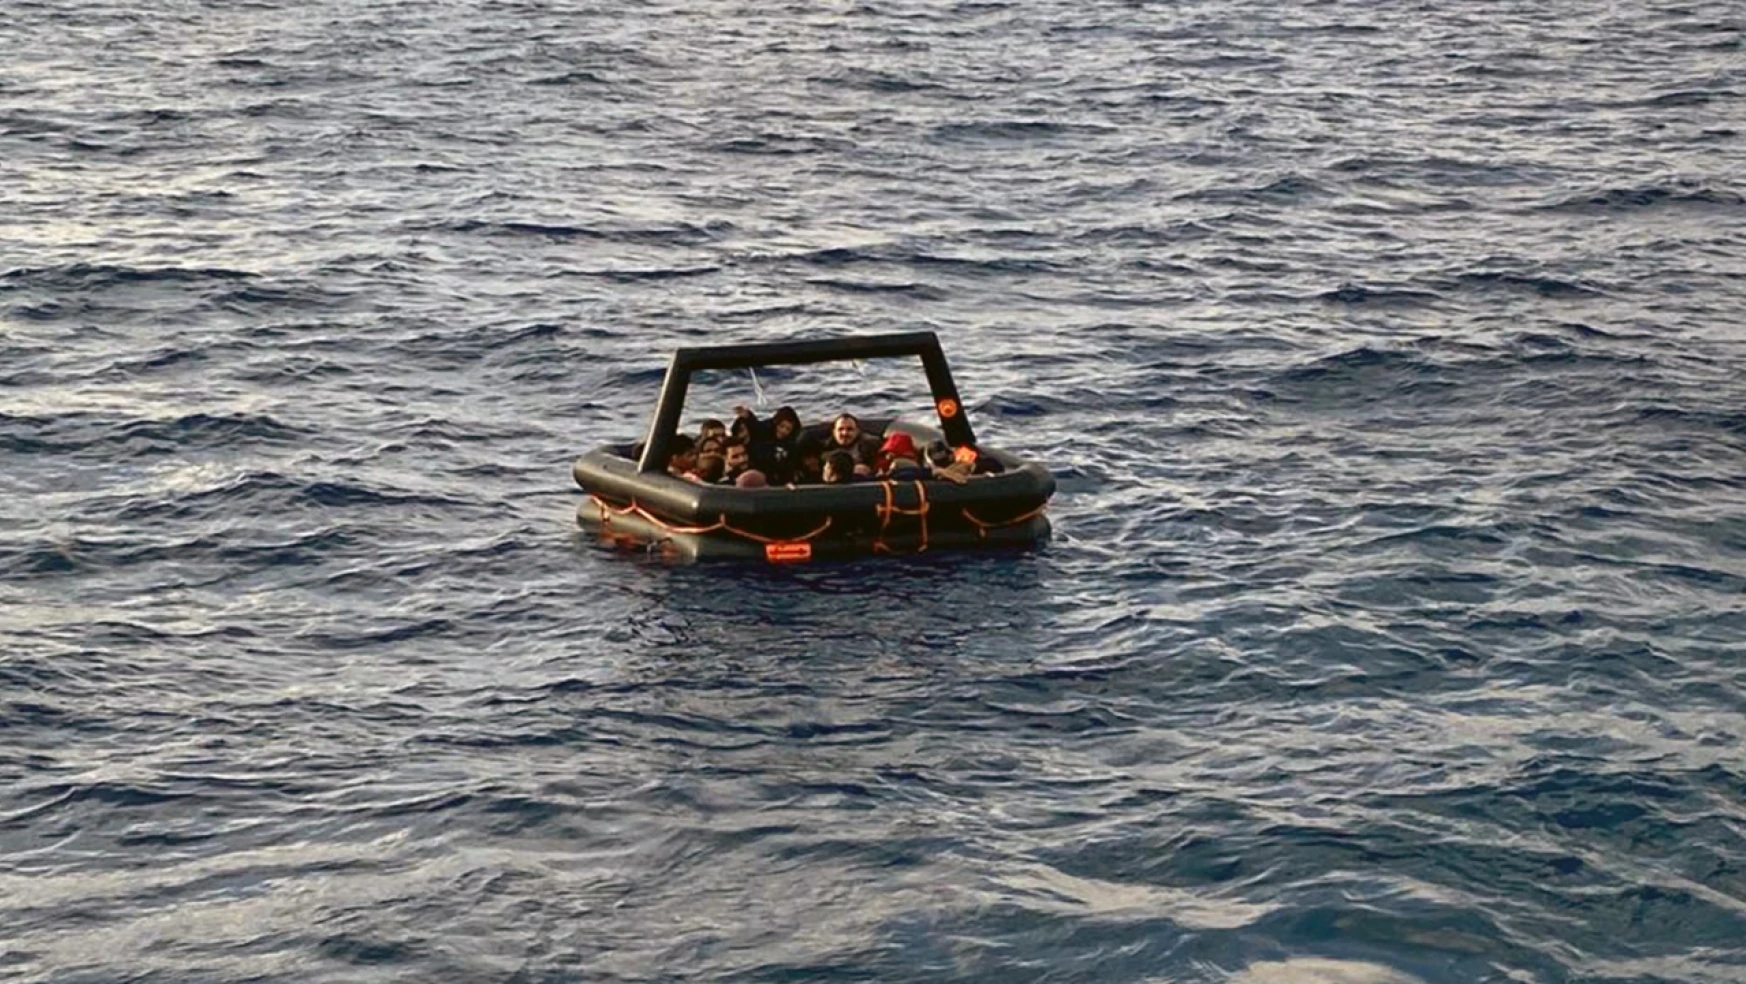 Yunan unsurlarınca ölüme terk edilen 50 kaçak göçmen kurtarıldı